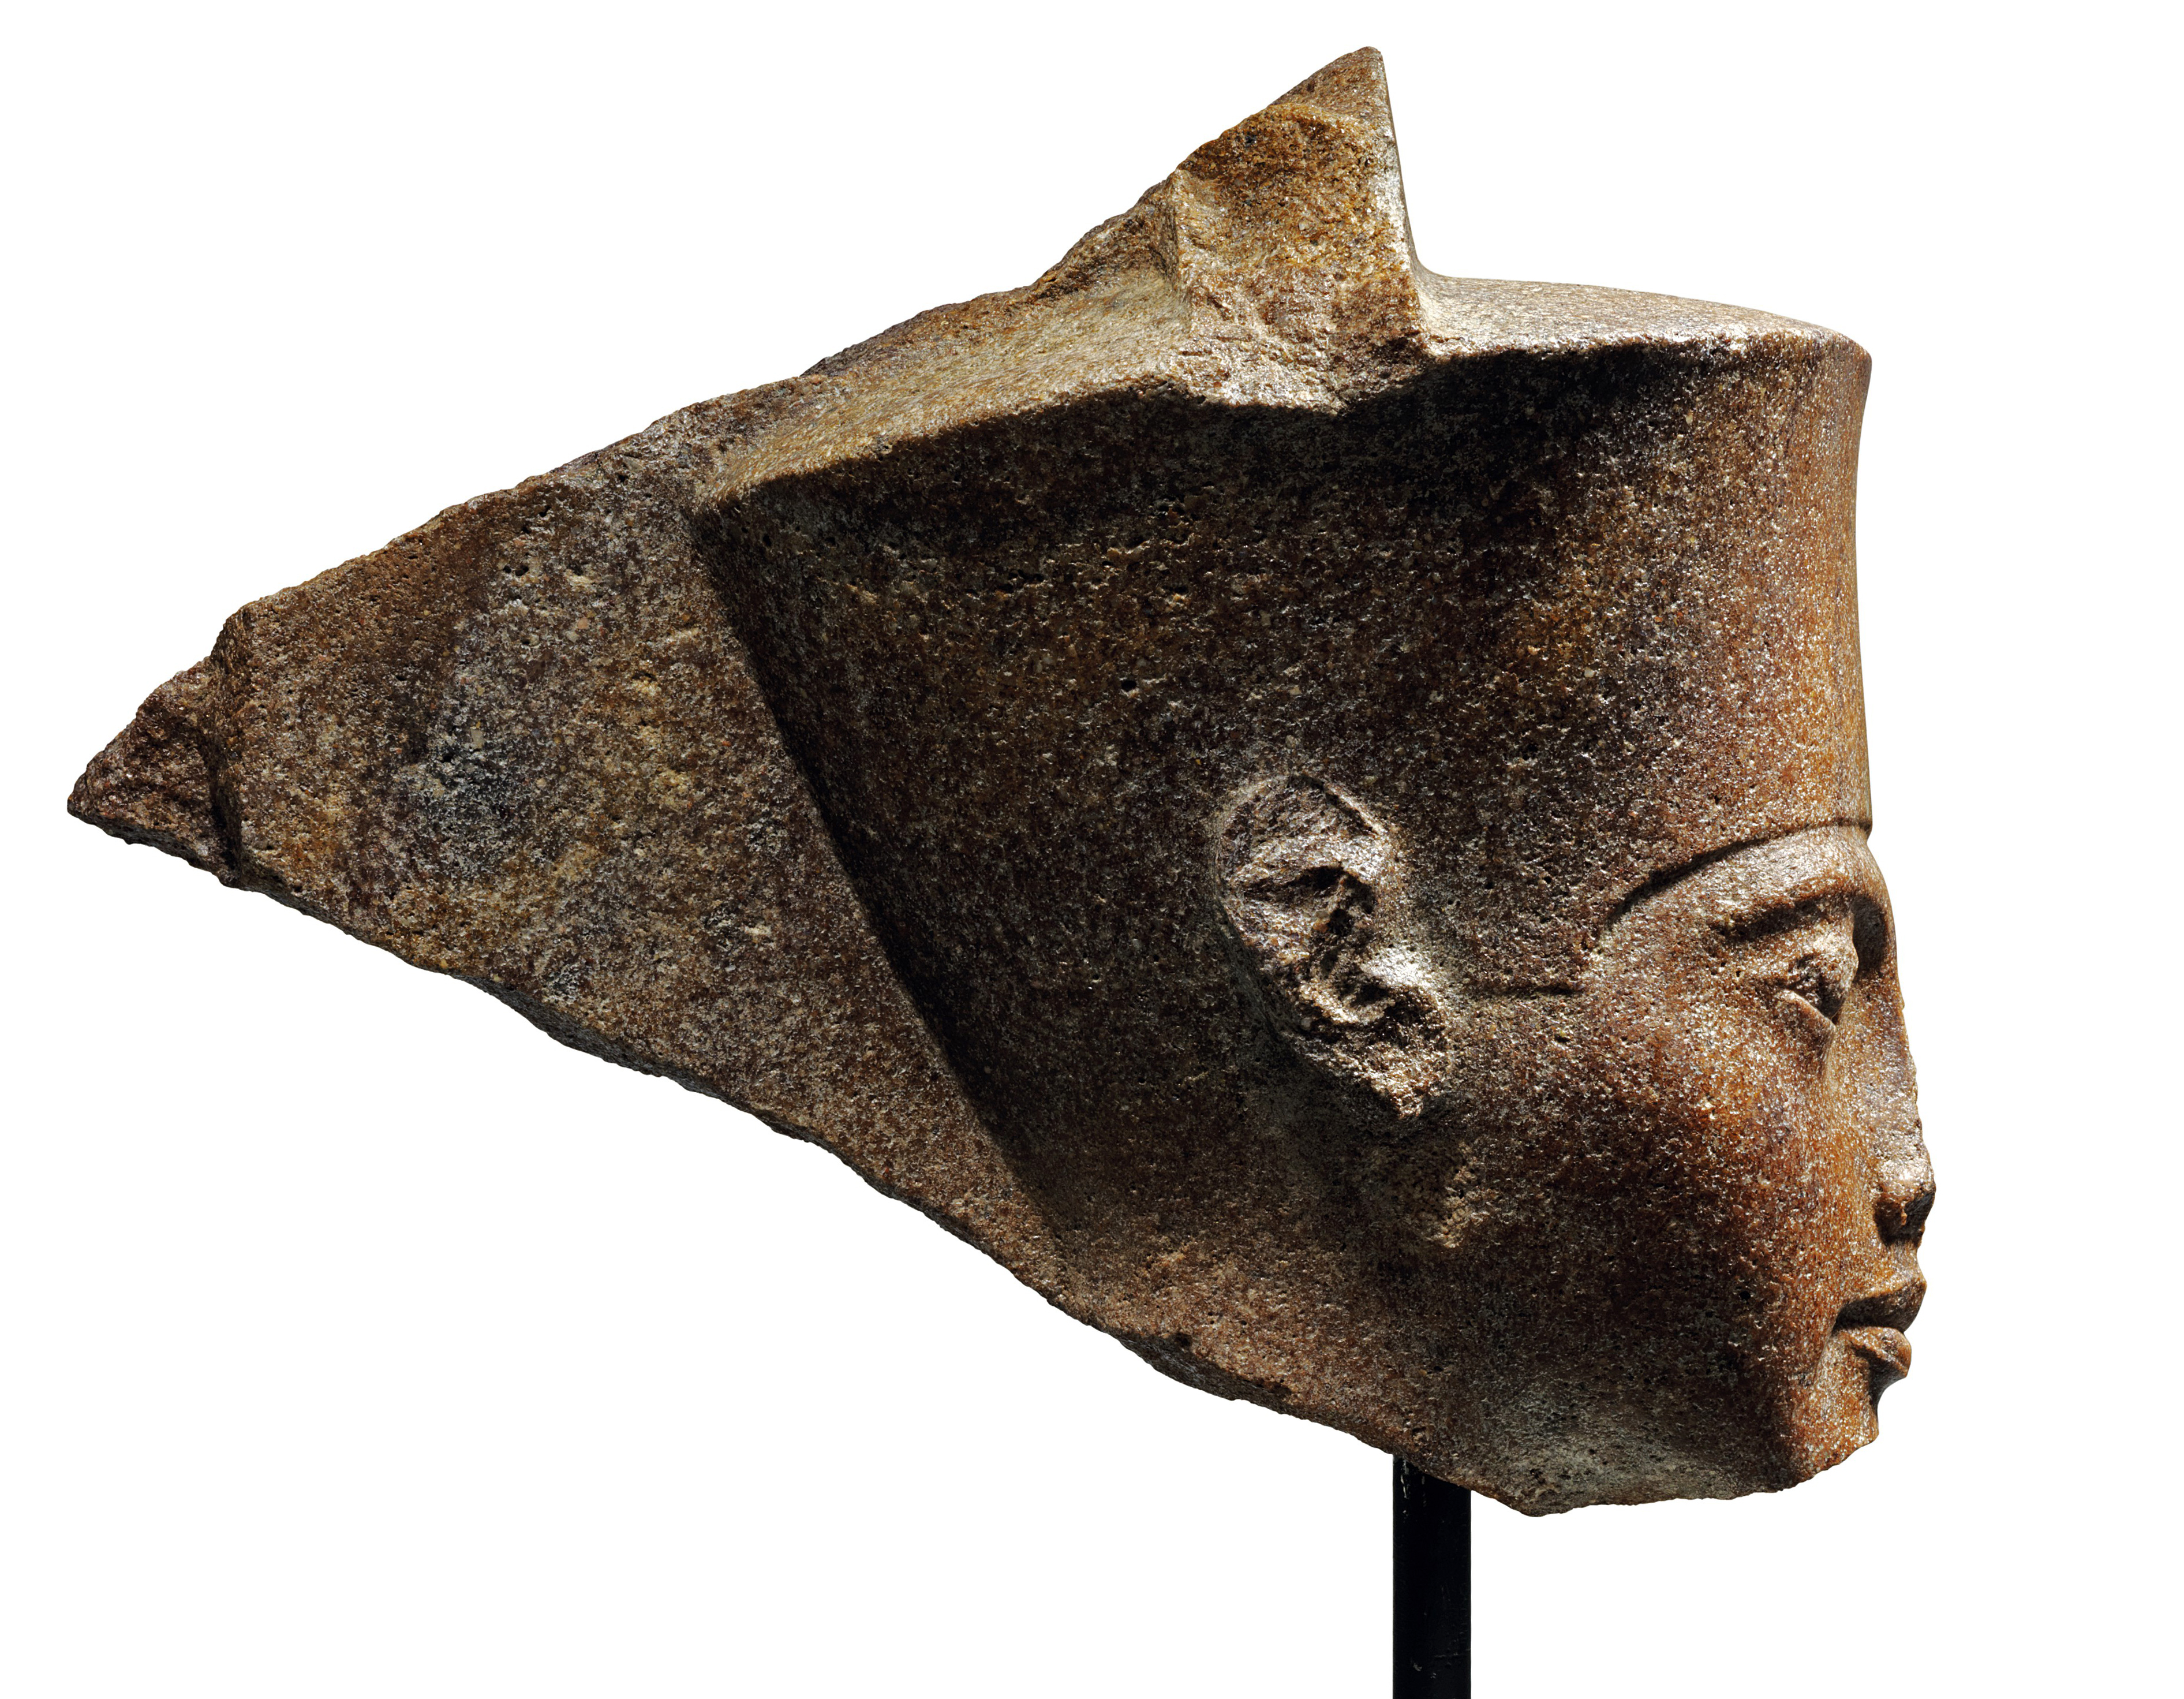 Hiába tiltakozott Egyiptom, elárverezik Tutanhamon bronz szoborfejét